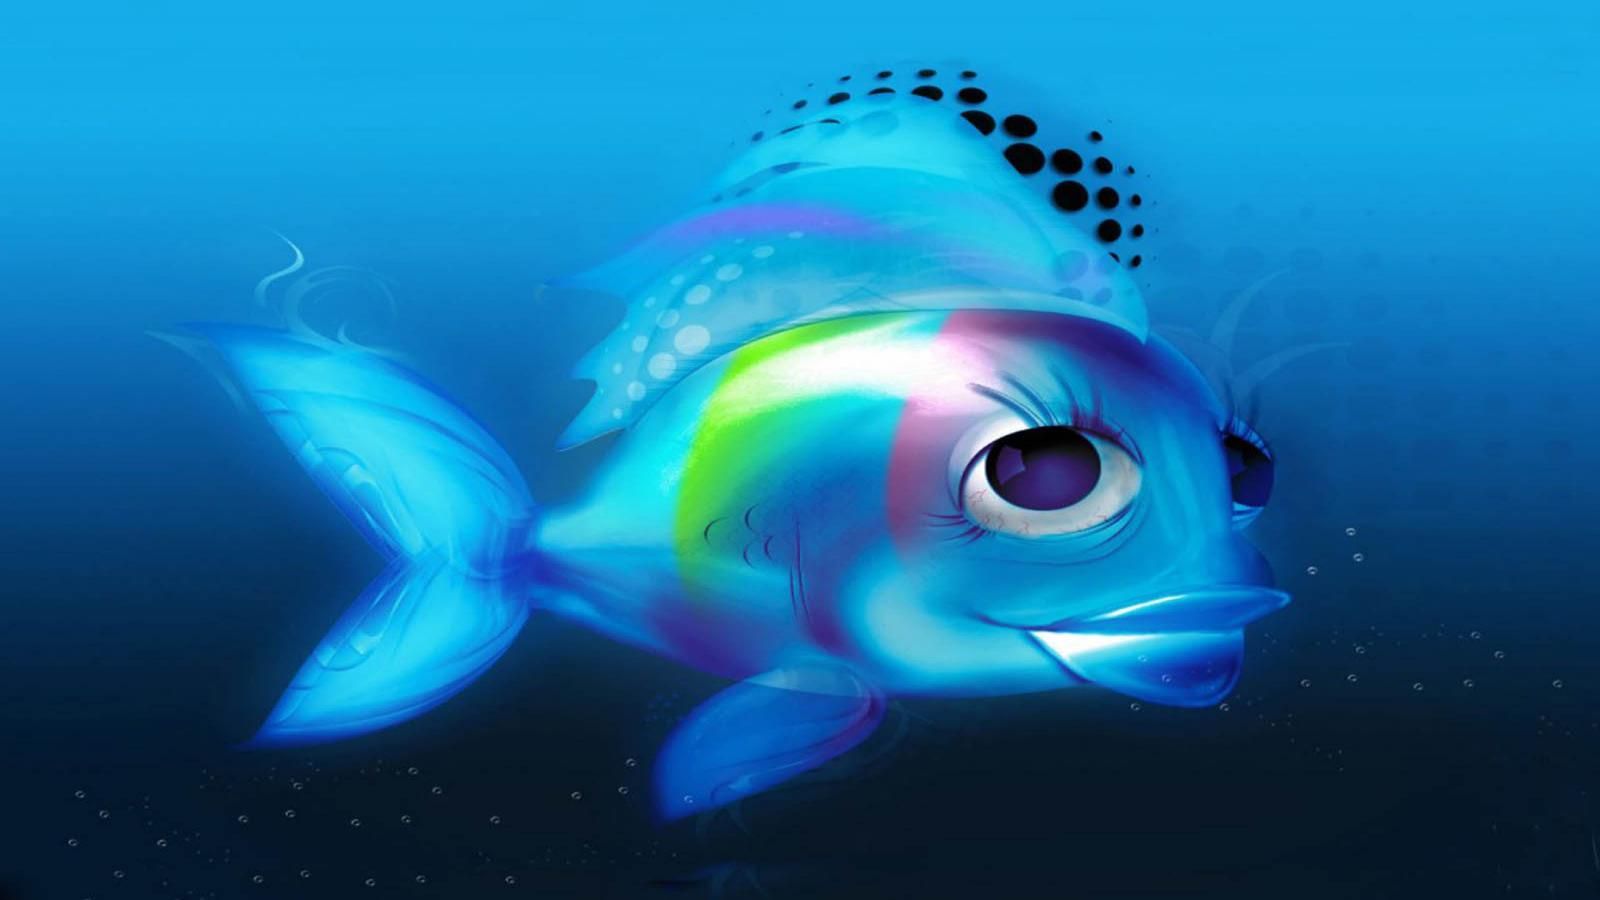 fish 3D wallpaper free download 3D fish wallpaper 2 1600×900